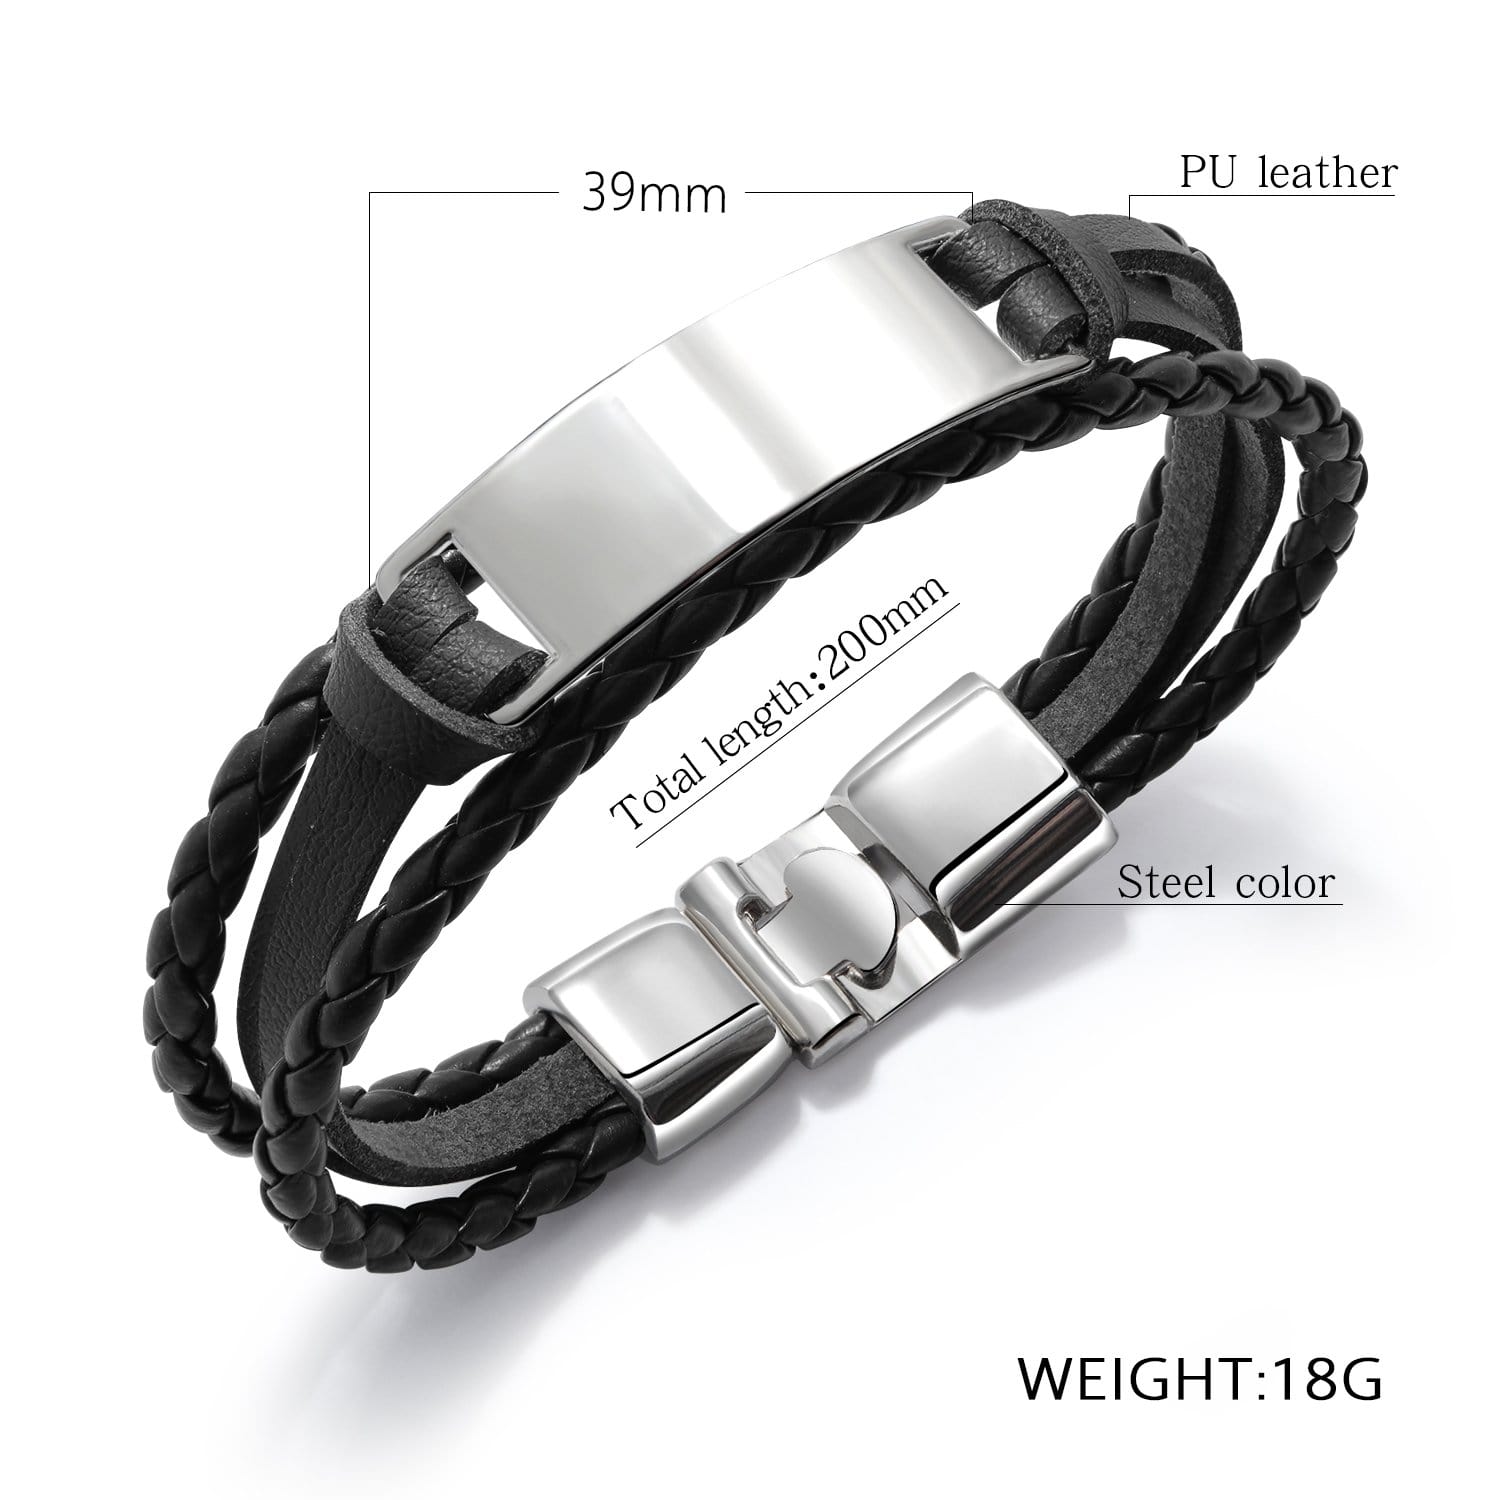 Bracelets To My Boyfriend - I Love You Leather Bracelet GiveMe-Gifts